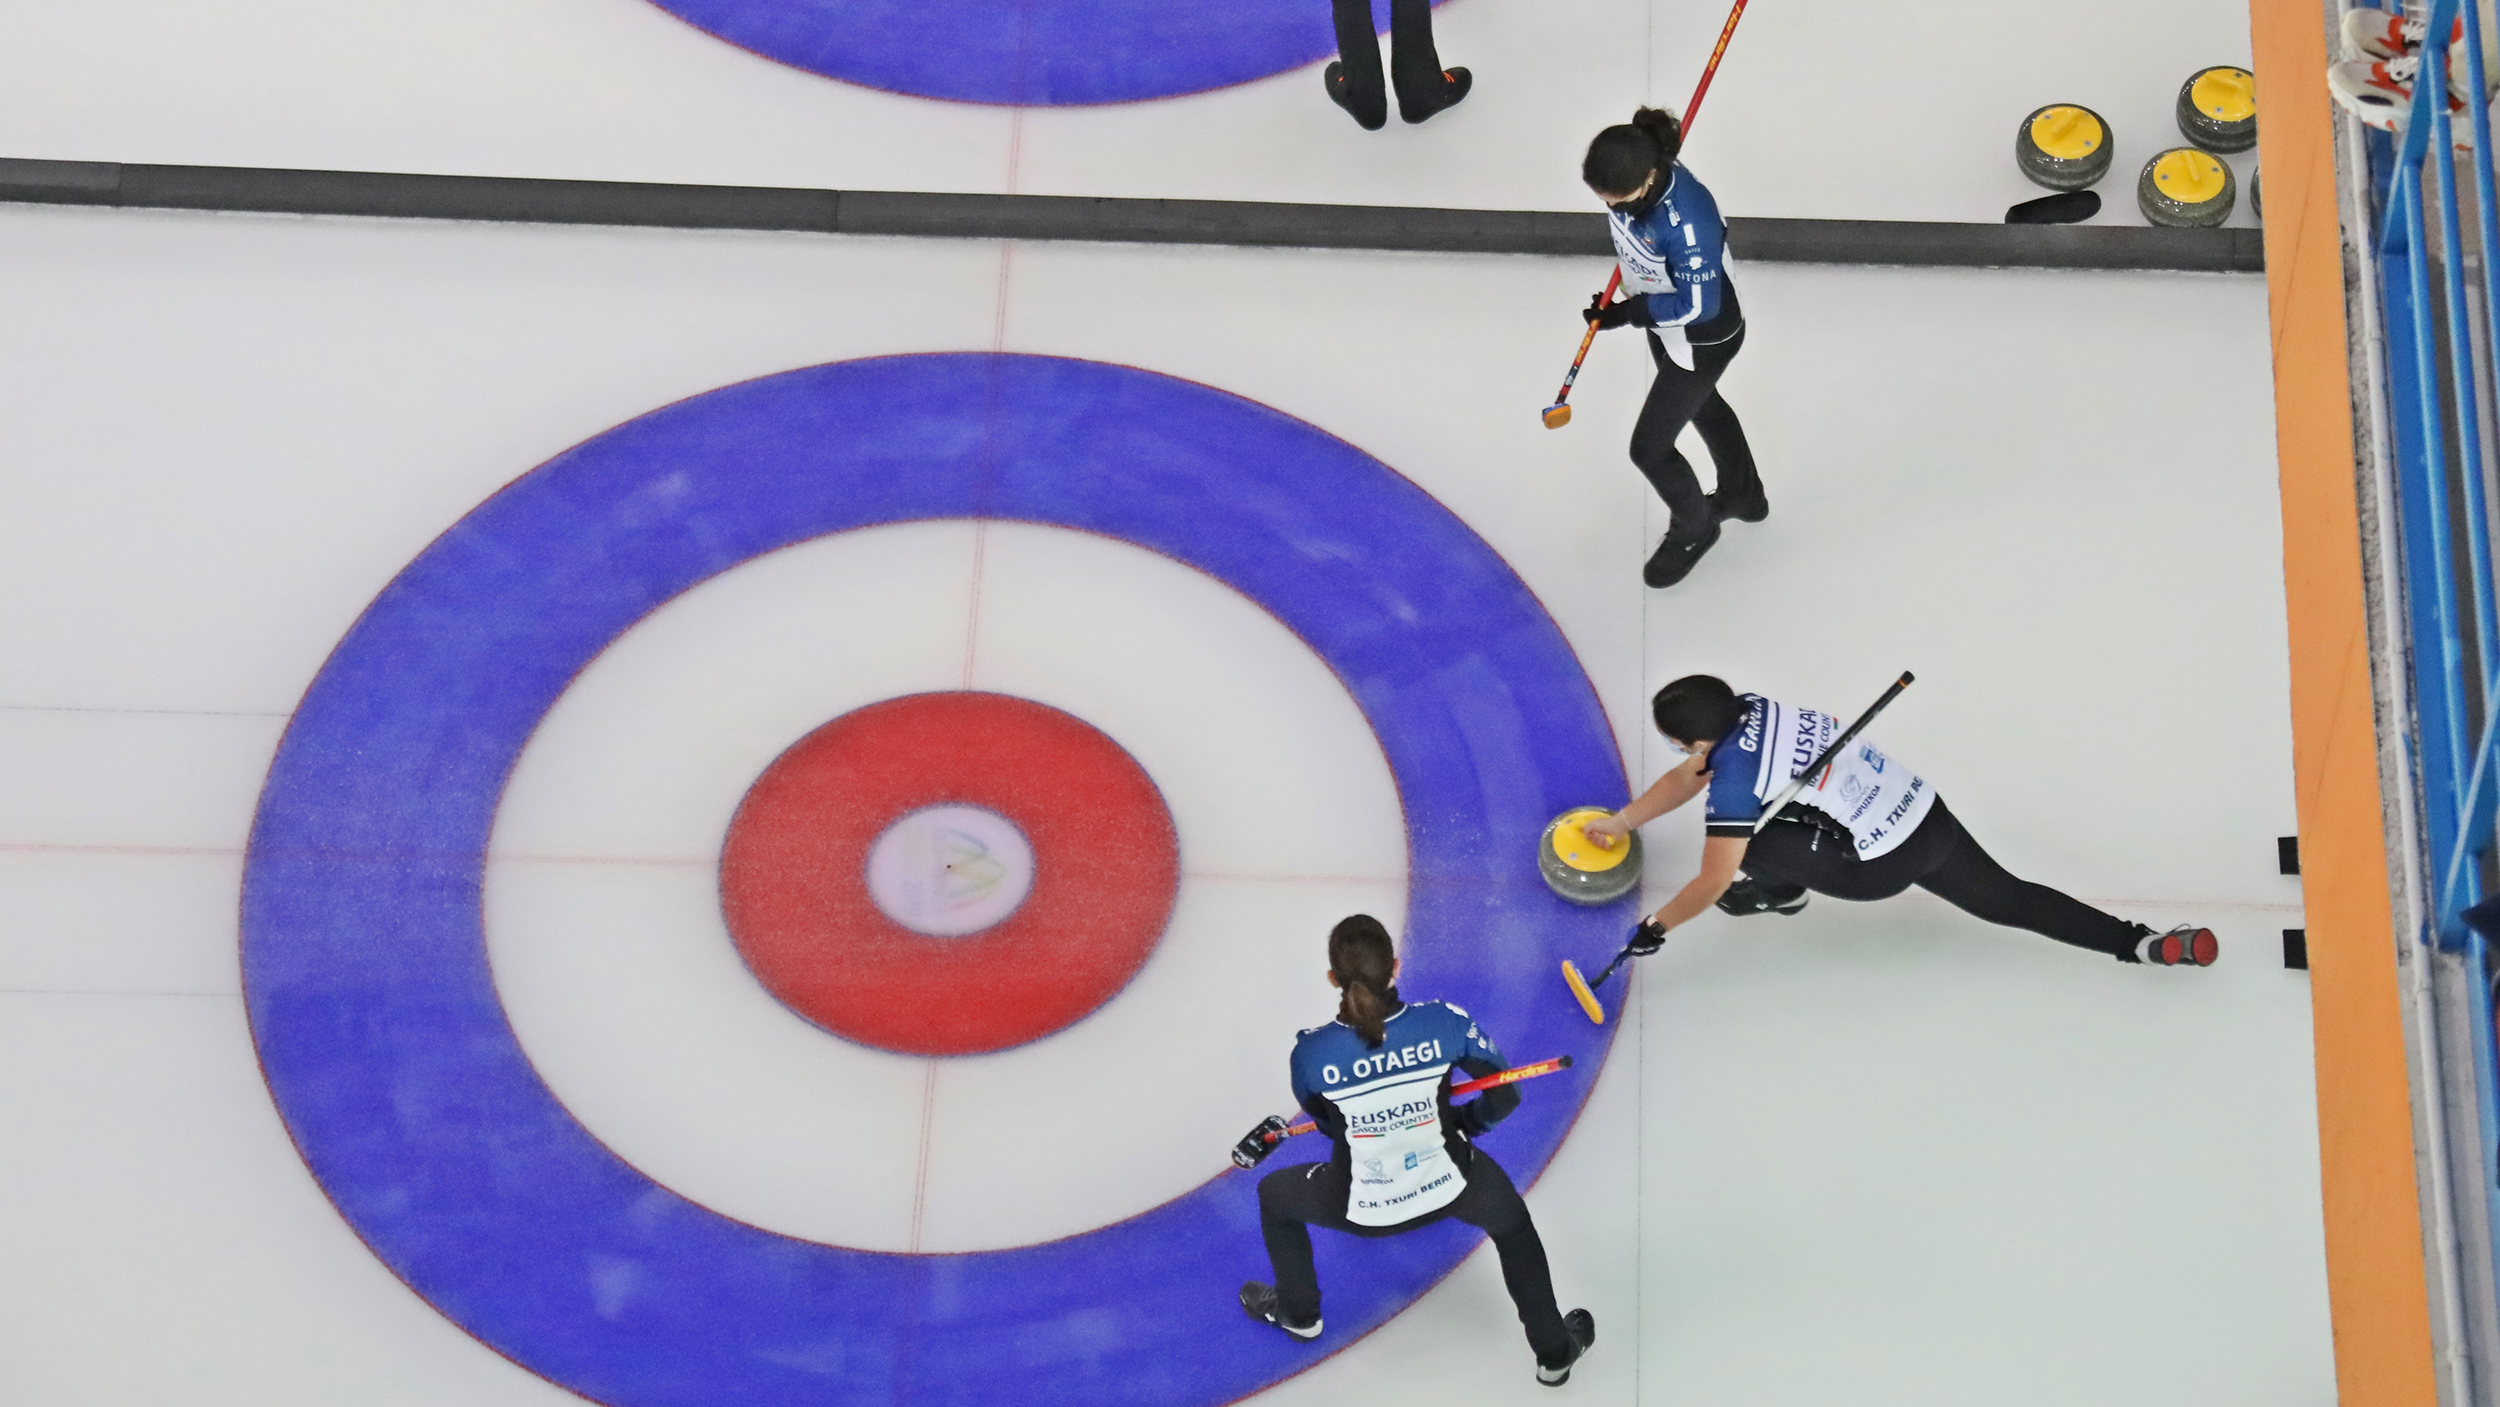 , Arranca la segunda edición de las Ligas nacionales de Curling, Real Federación Española Deportes de Hielo